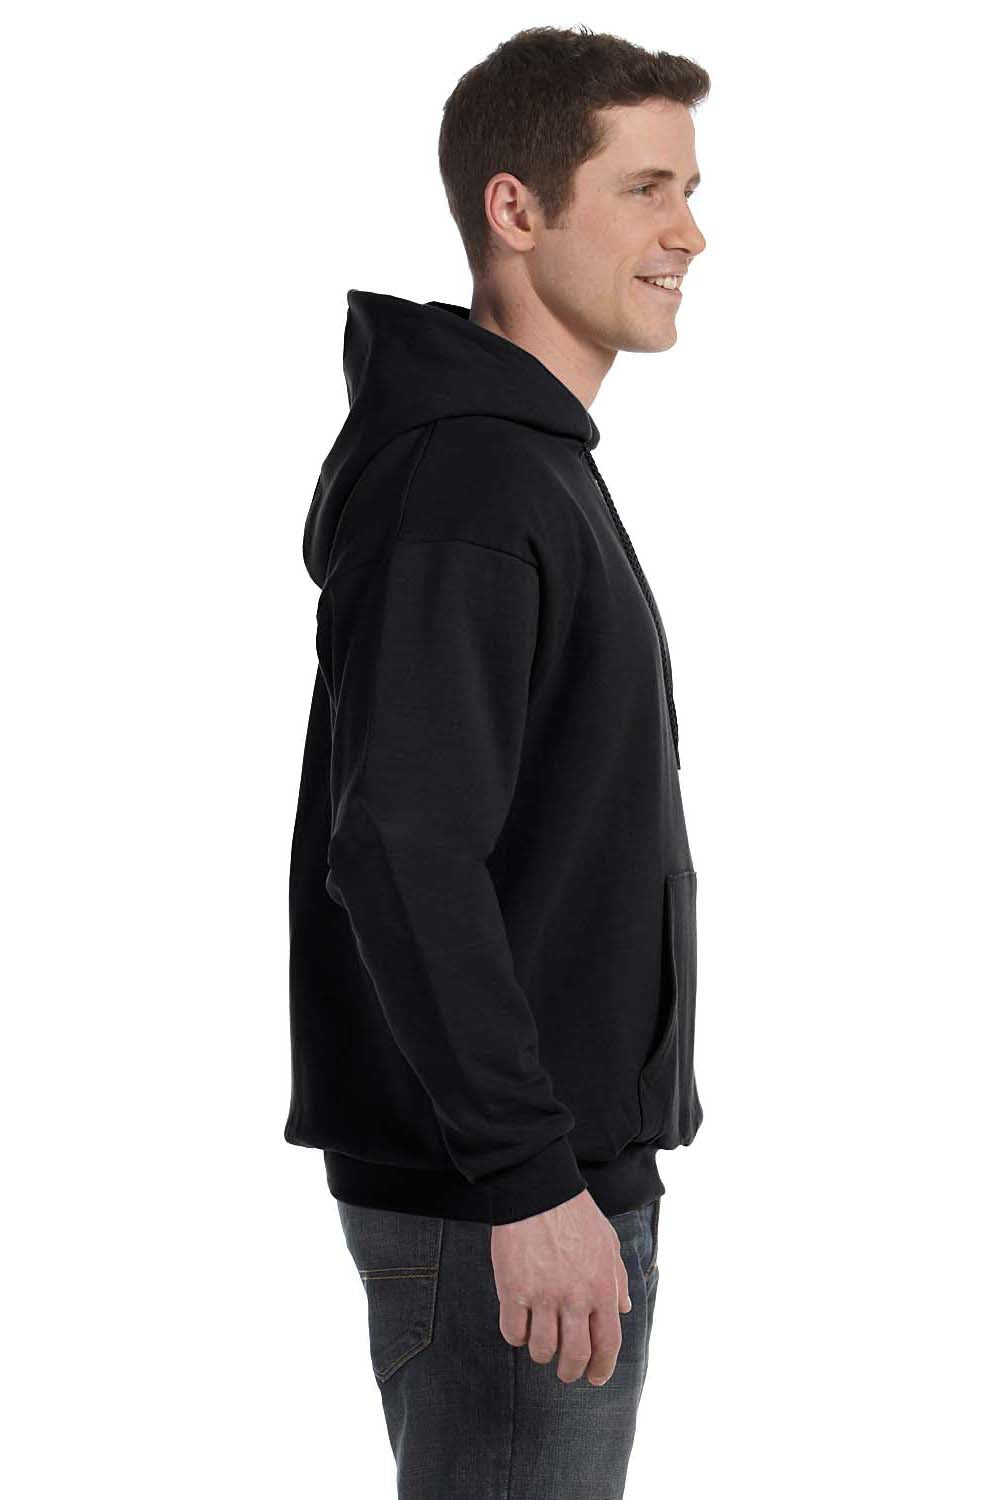 Hanes P170 Mens EcoSmart Print Pro XP Hooded Sweatshirt Hoodie Black Side